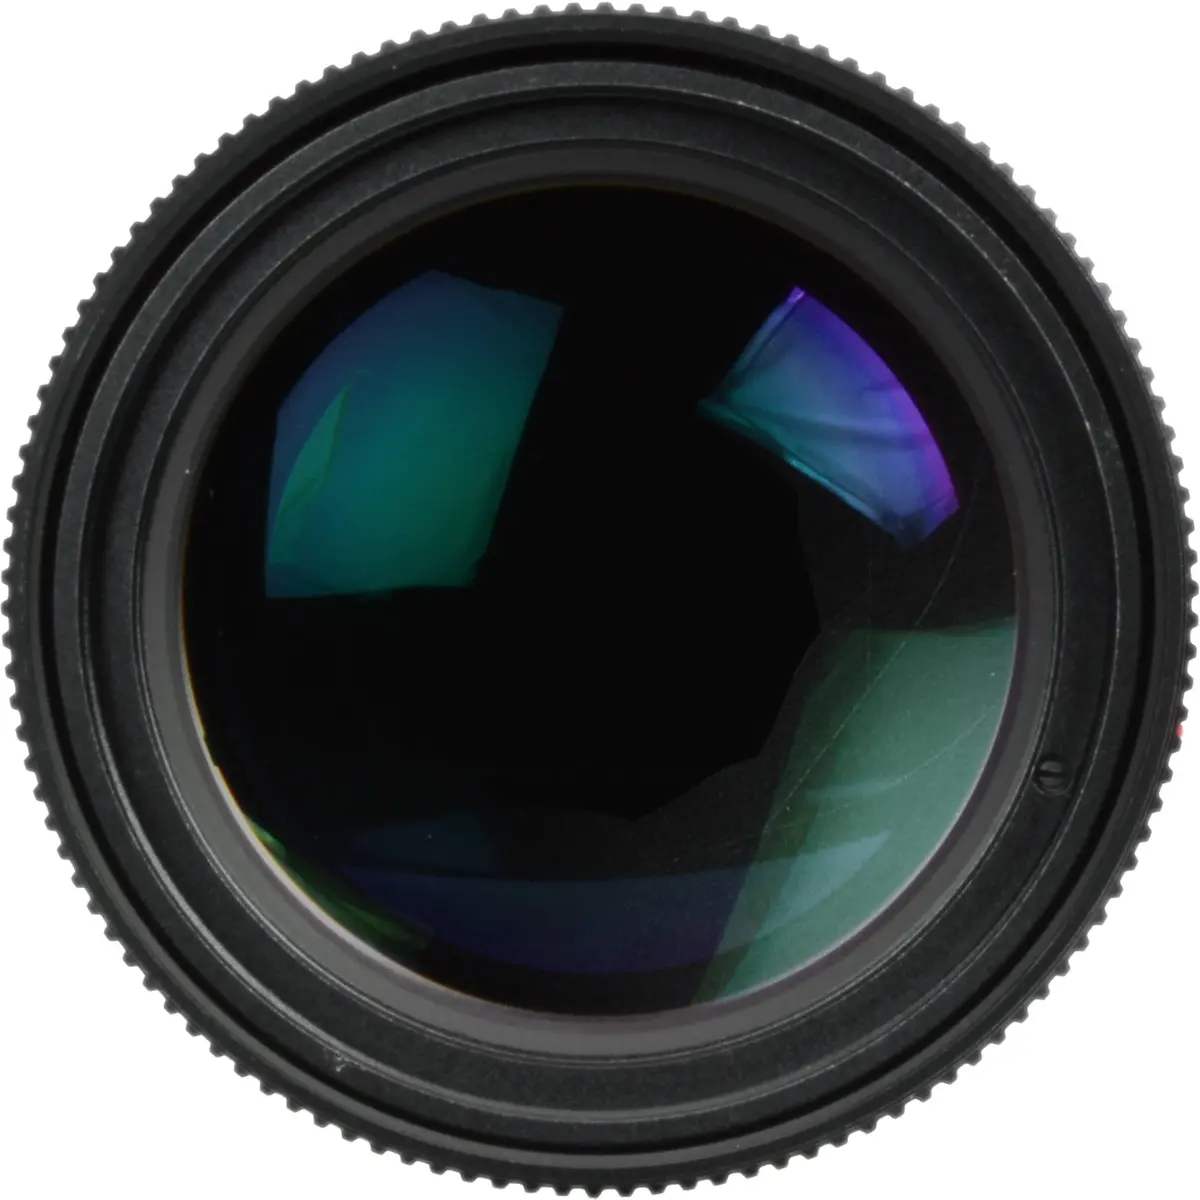 7. Leica APO-Telyt-M 135mm F3.4 (11889)